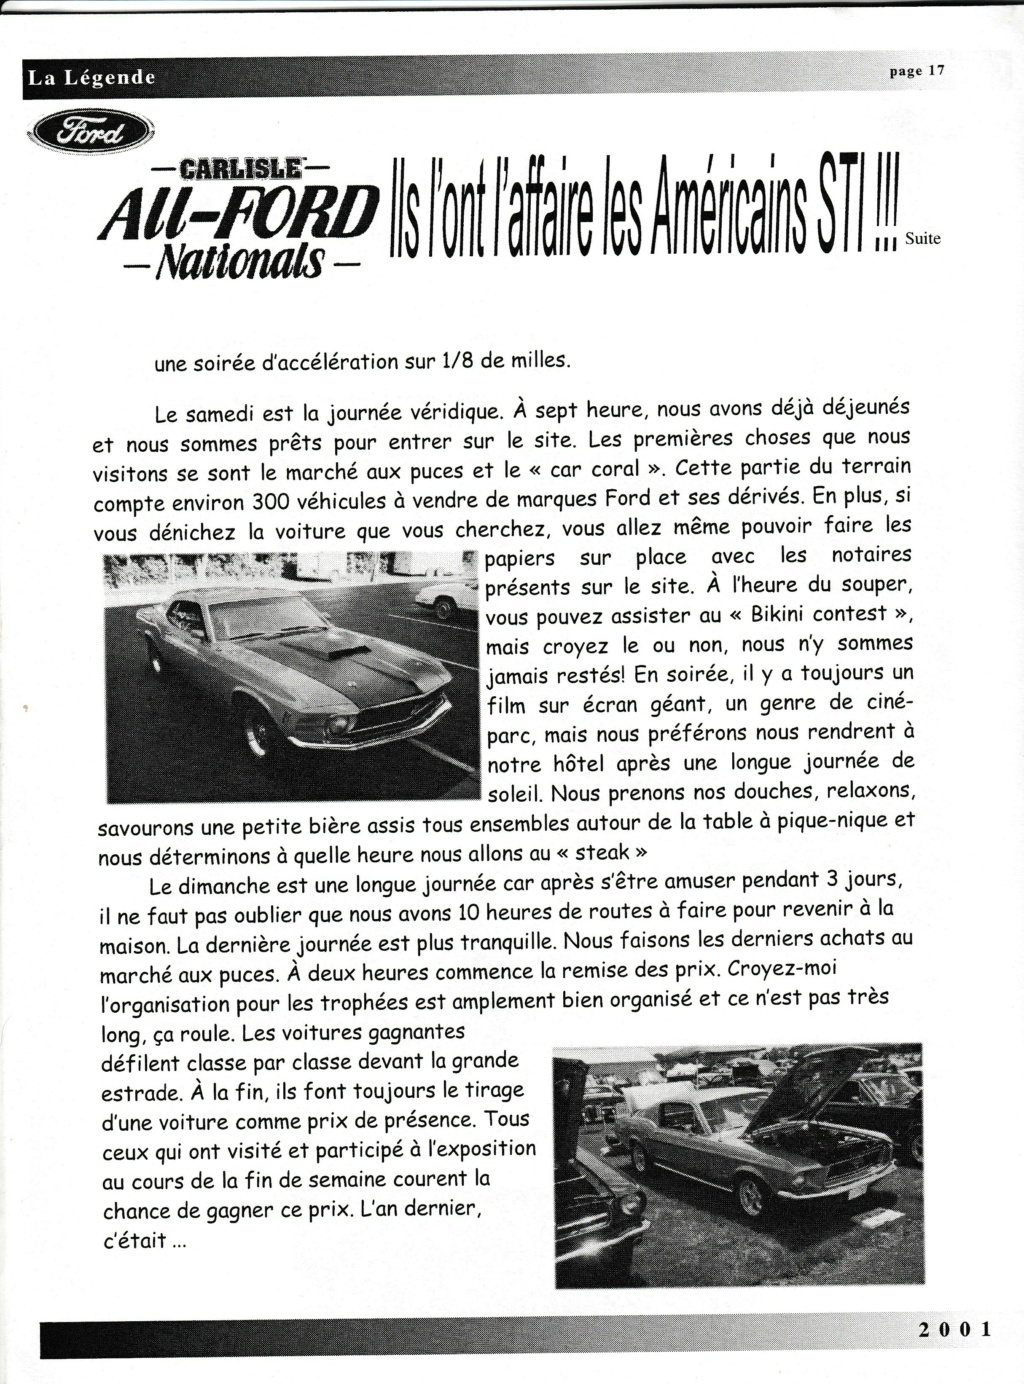 Montréal Mustang dans le temps! 1981 à aujourd'hui (Histoire en photos) - Page 9 Img_2552